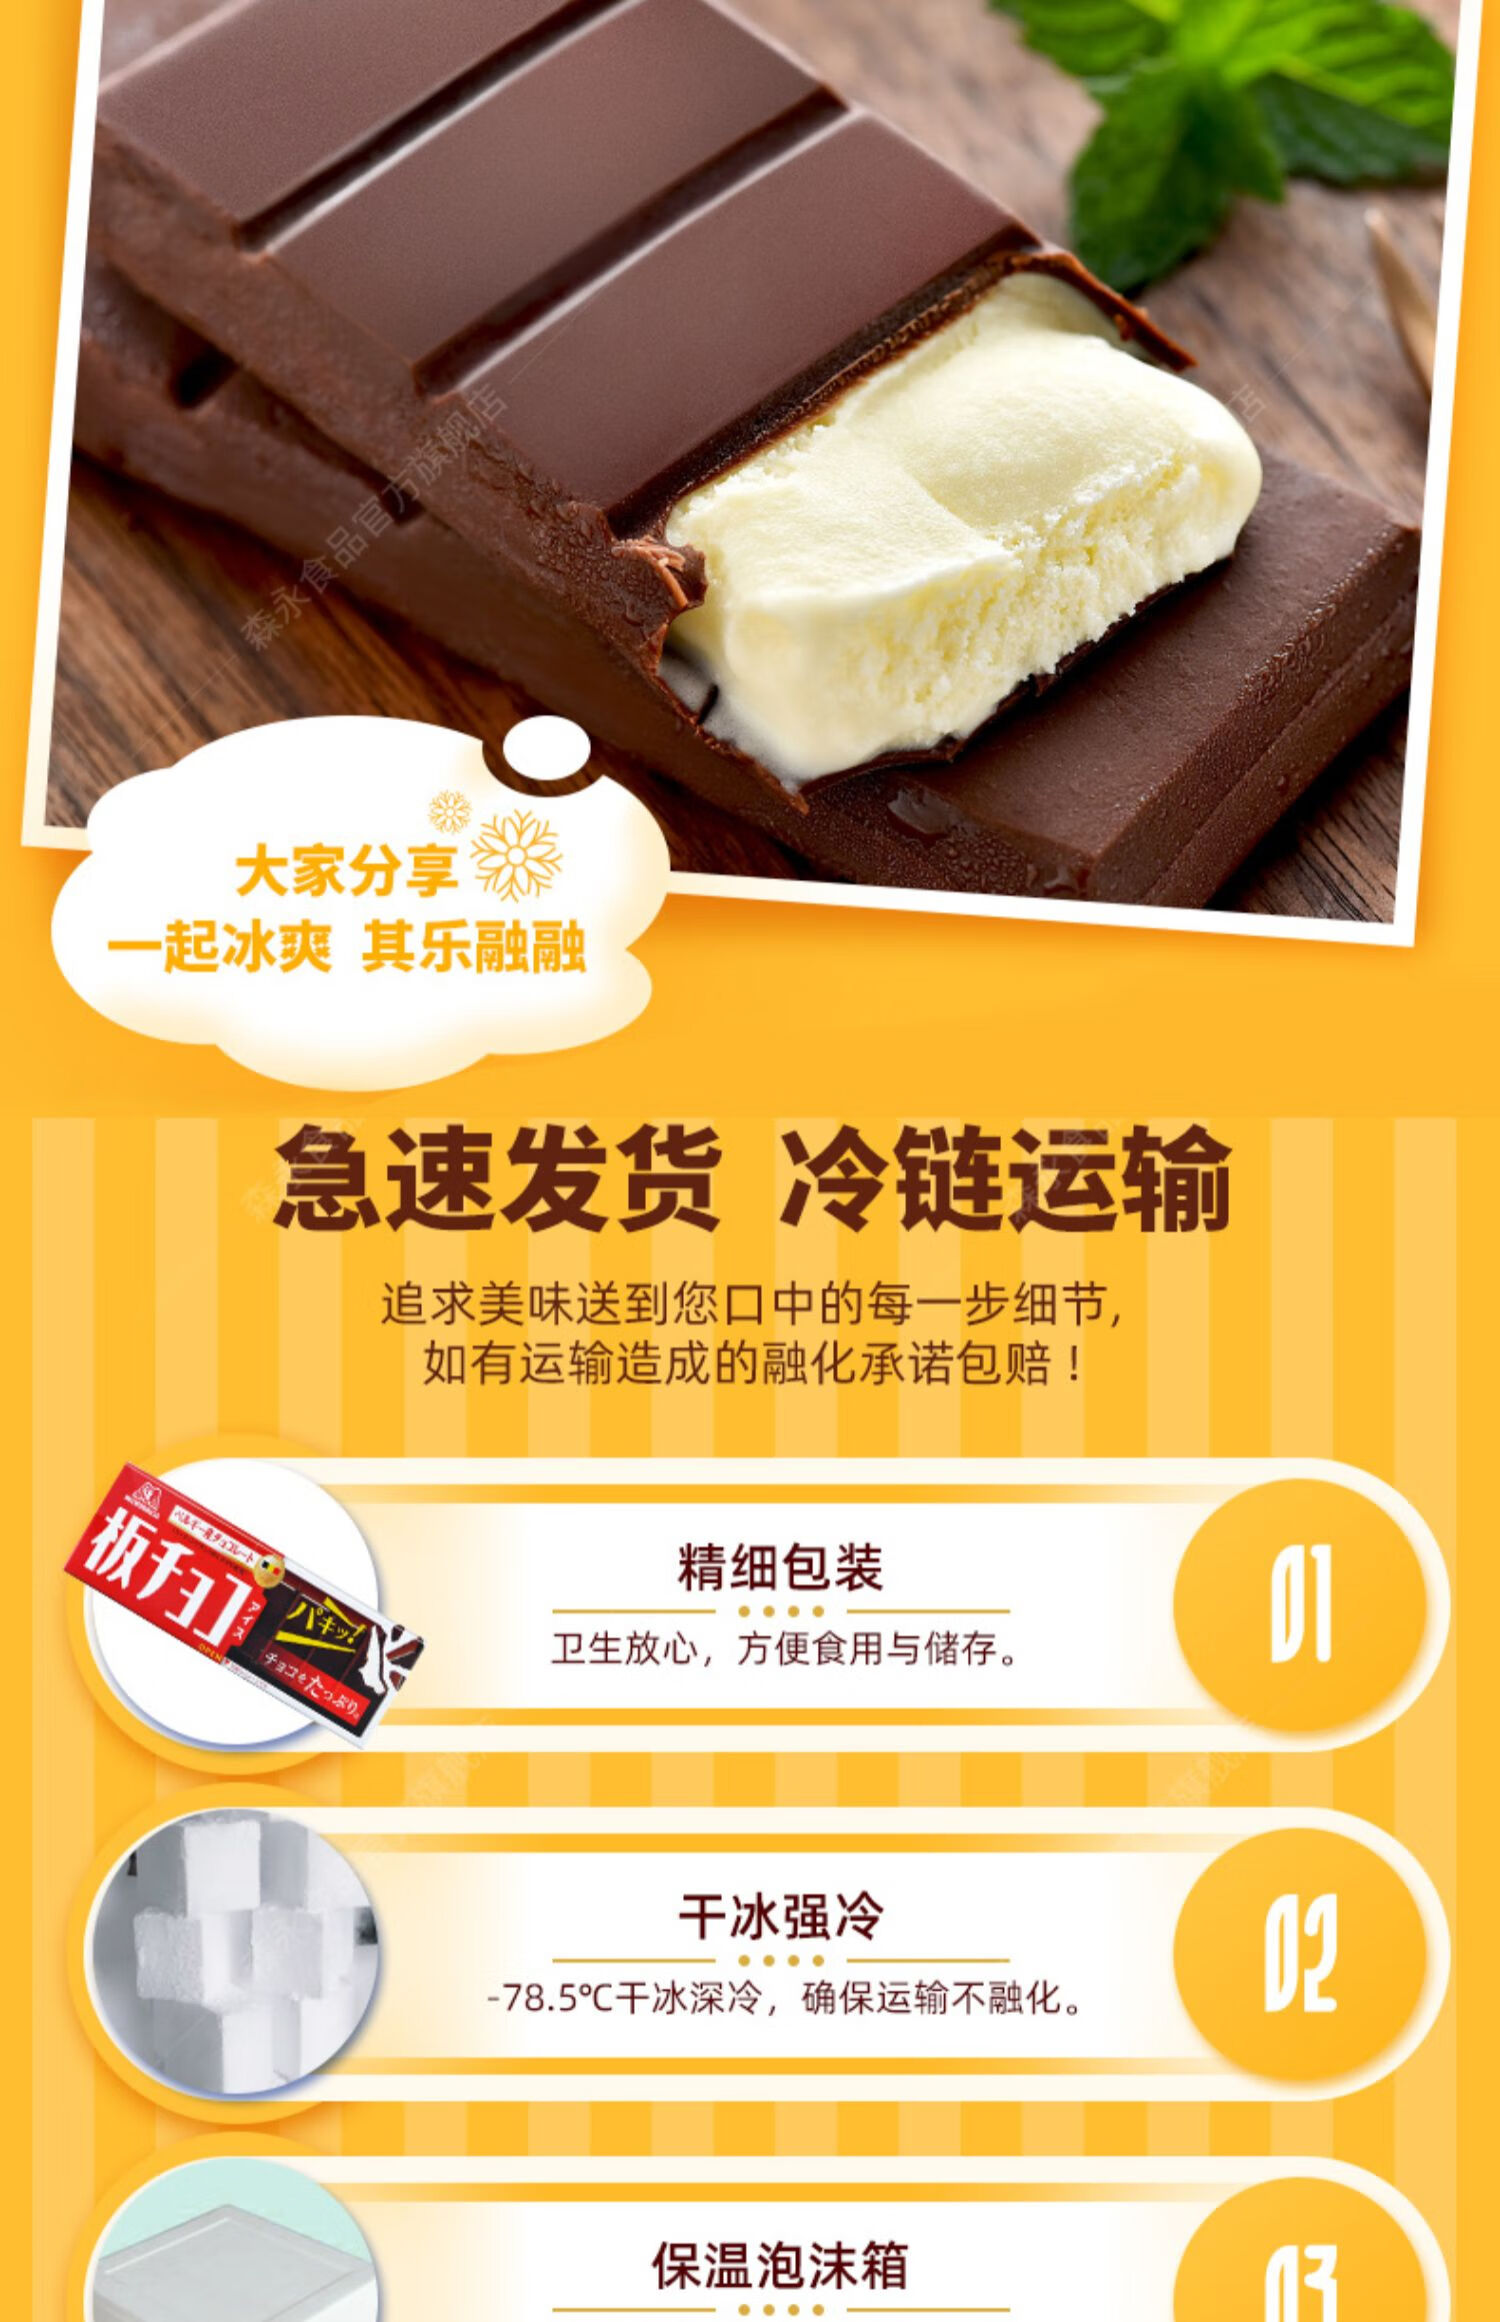 新品日本进口巧克力风味排块冰淇淋脆皮冰棒夹心奶雪糕 10盒 排块